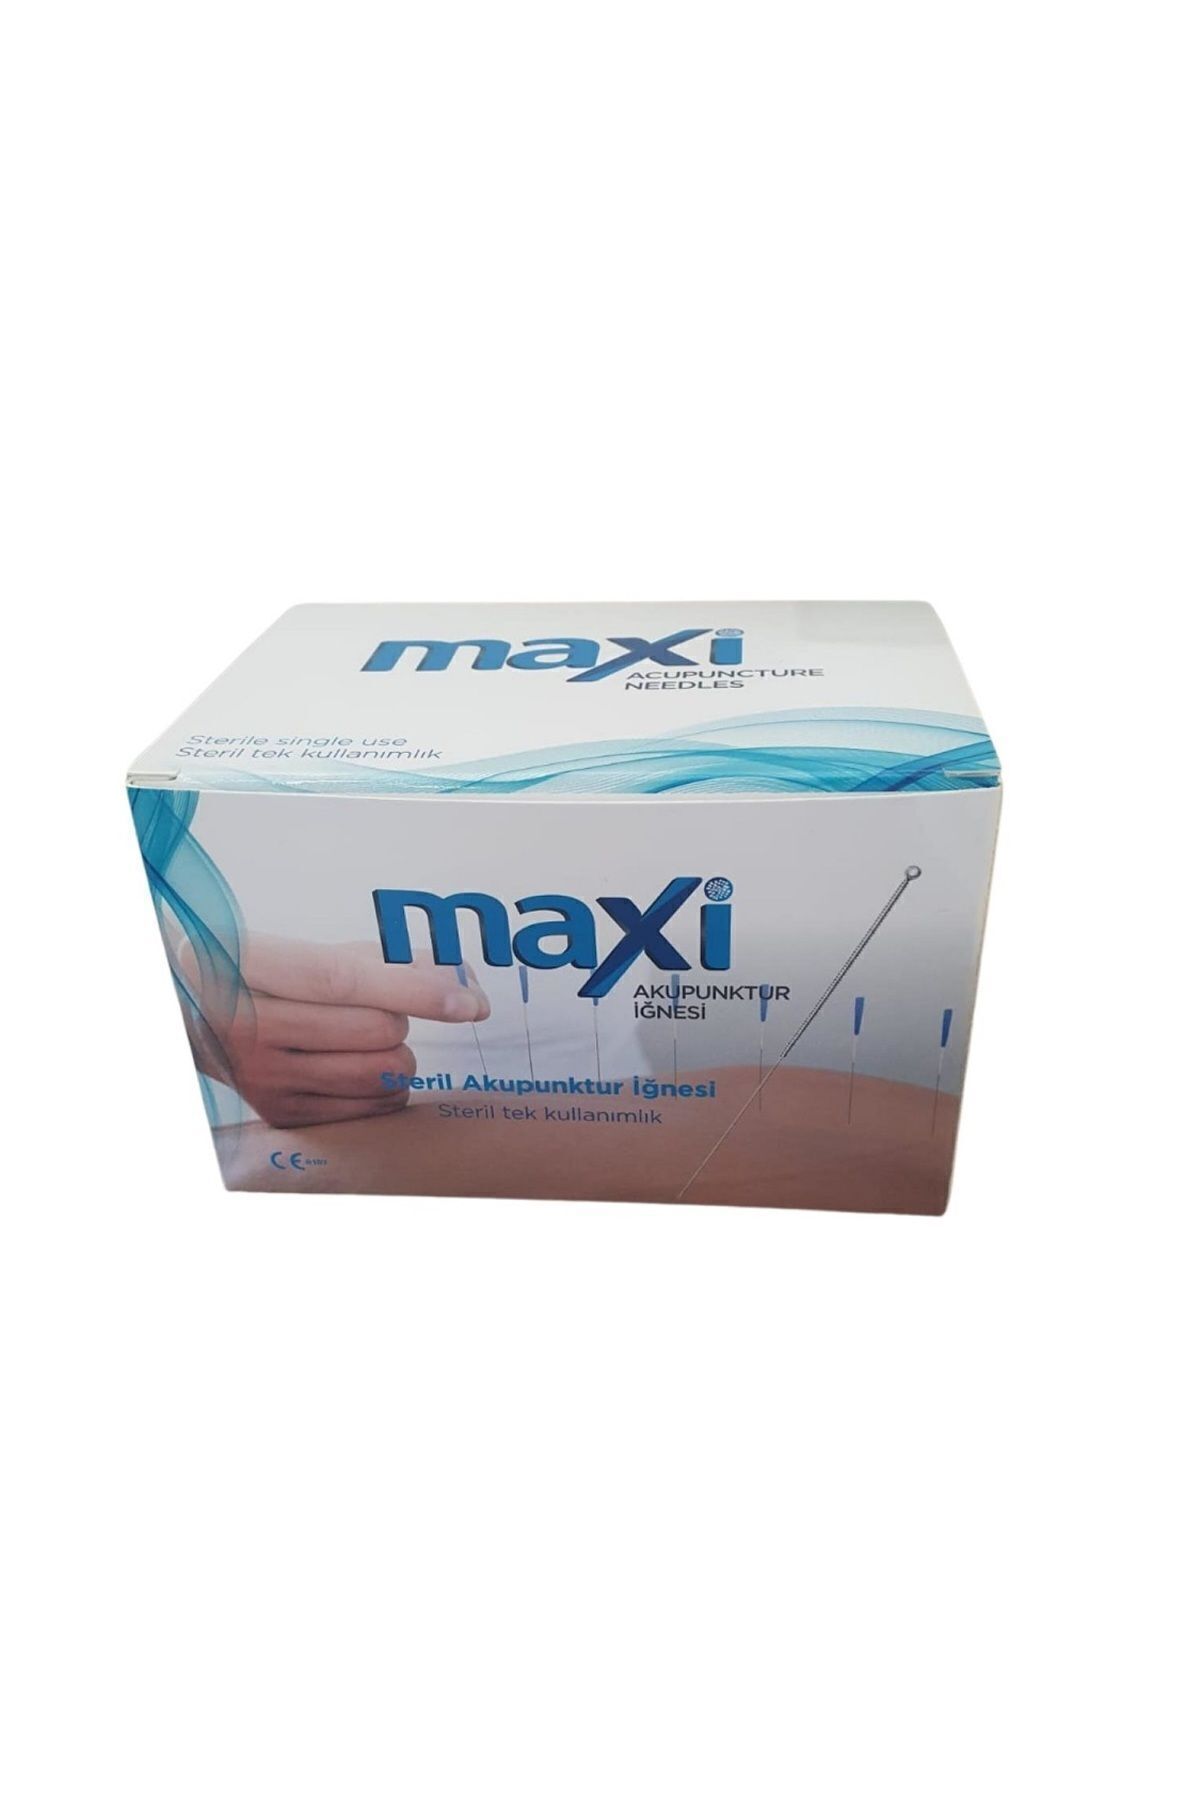 MAXİ Maxi Air Akupunktur Iğnesi Kuru Iğne Needle 0.25x40 Mm